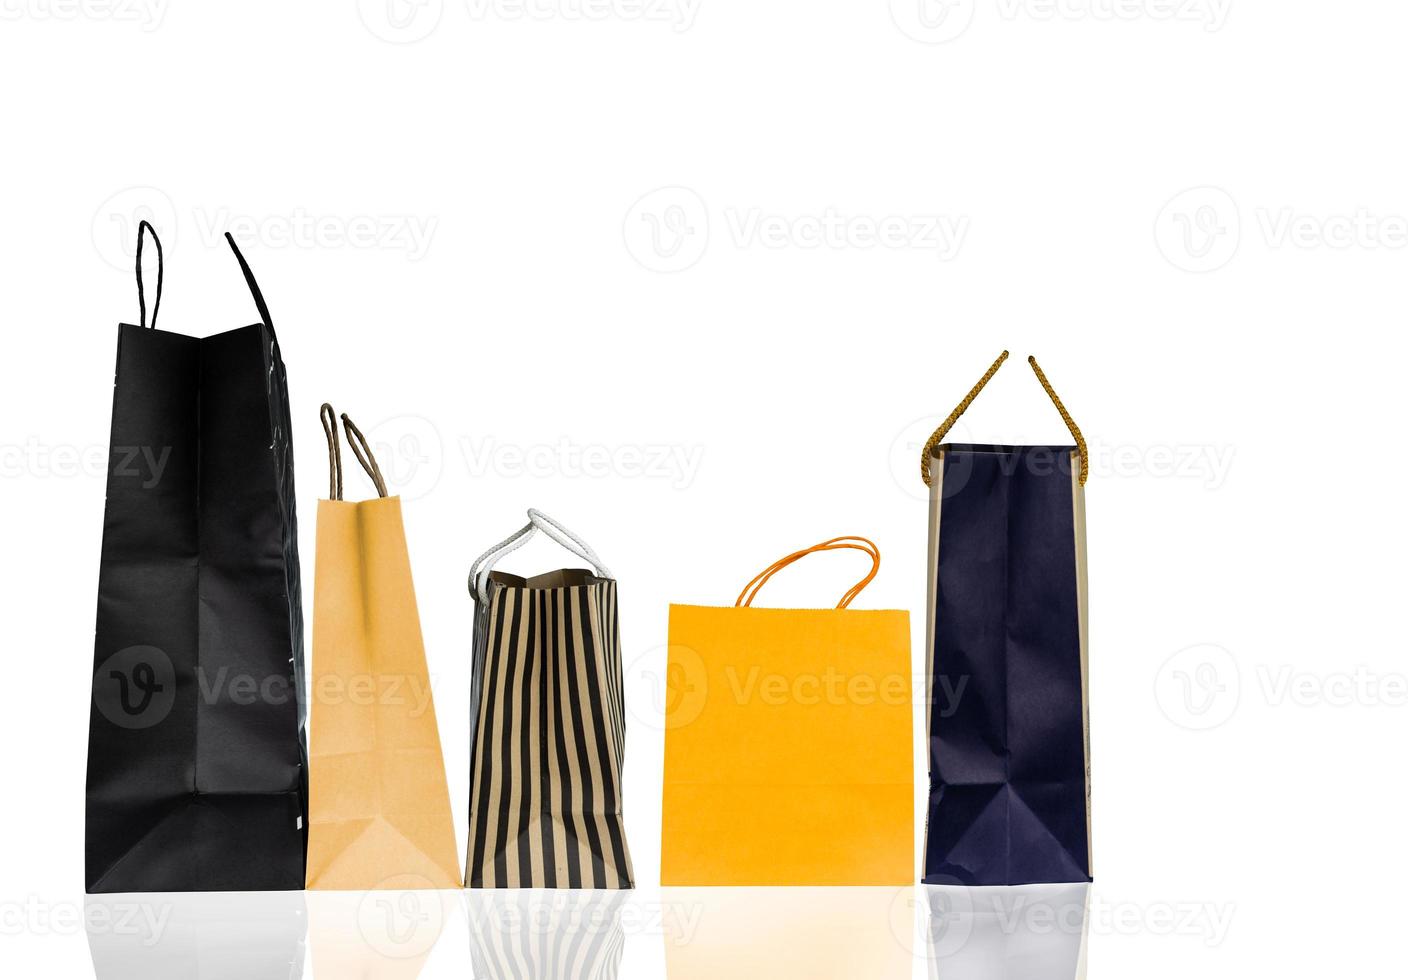 fünf Papier-Einkaufstüten isoliert auf weißem Hintergrund. Einkaufstasche mit blauer, brauner und gelber Farbe. Rabatt-Verkaufskonzept. Geschenktasche. Konsumkonzept. weihnachts- oder neujahrsgeschenktasche. foto